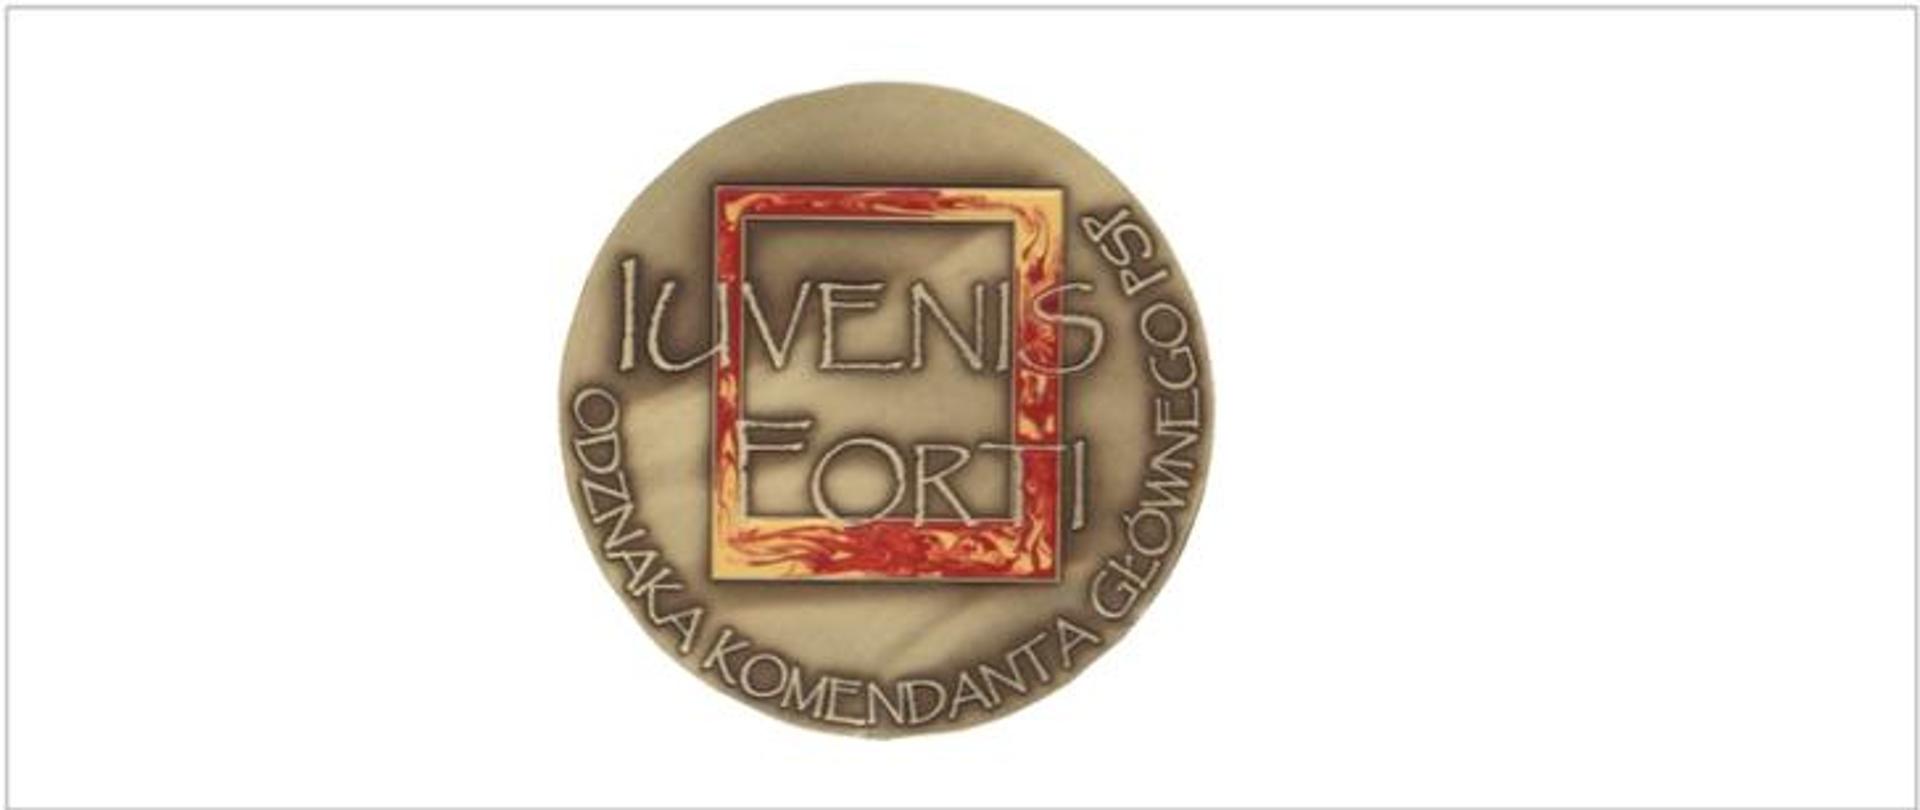 srebrna okrągła odznaka na której widnieje napis iuvenis fortis odznaka komendanta głównego PSP